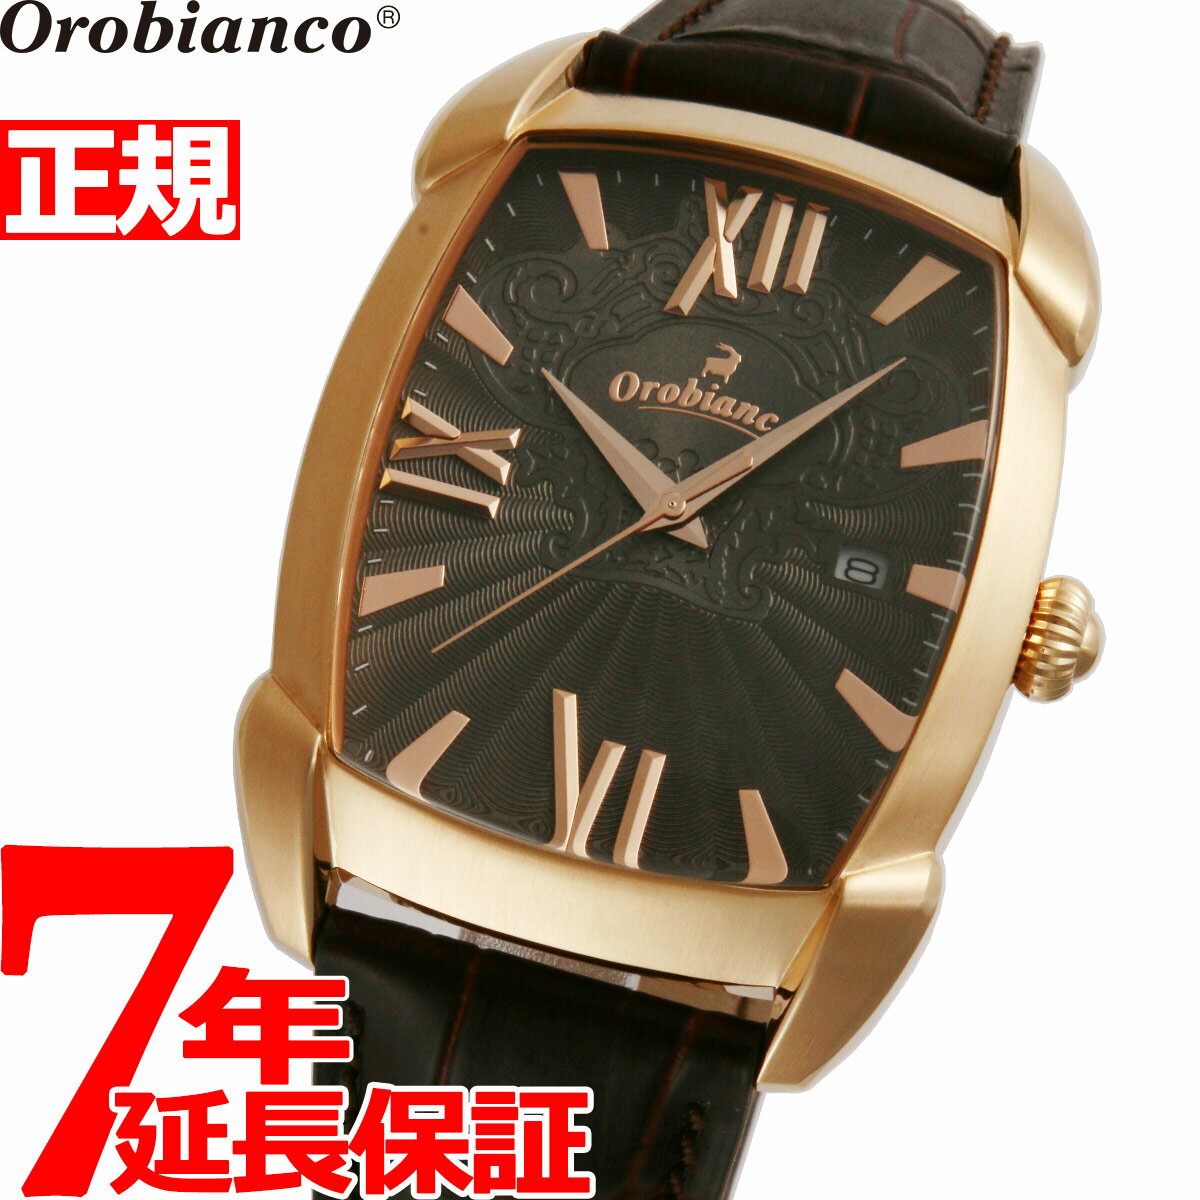 腕時計, メンズ腕時計 2000OFF5652320:005271:59 Orobianco RETTANGORA OR0079-1